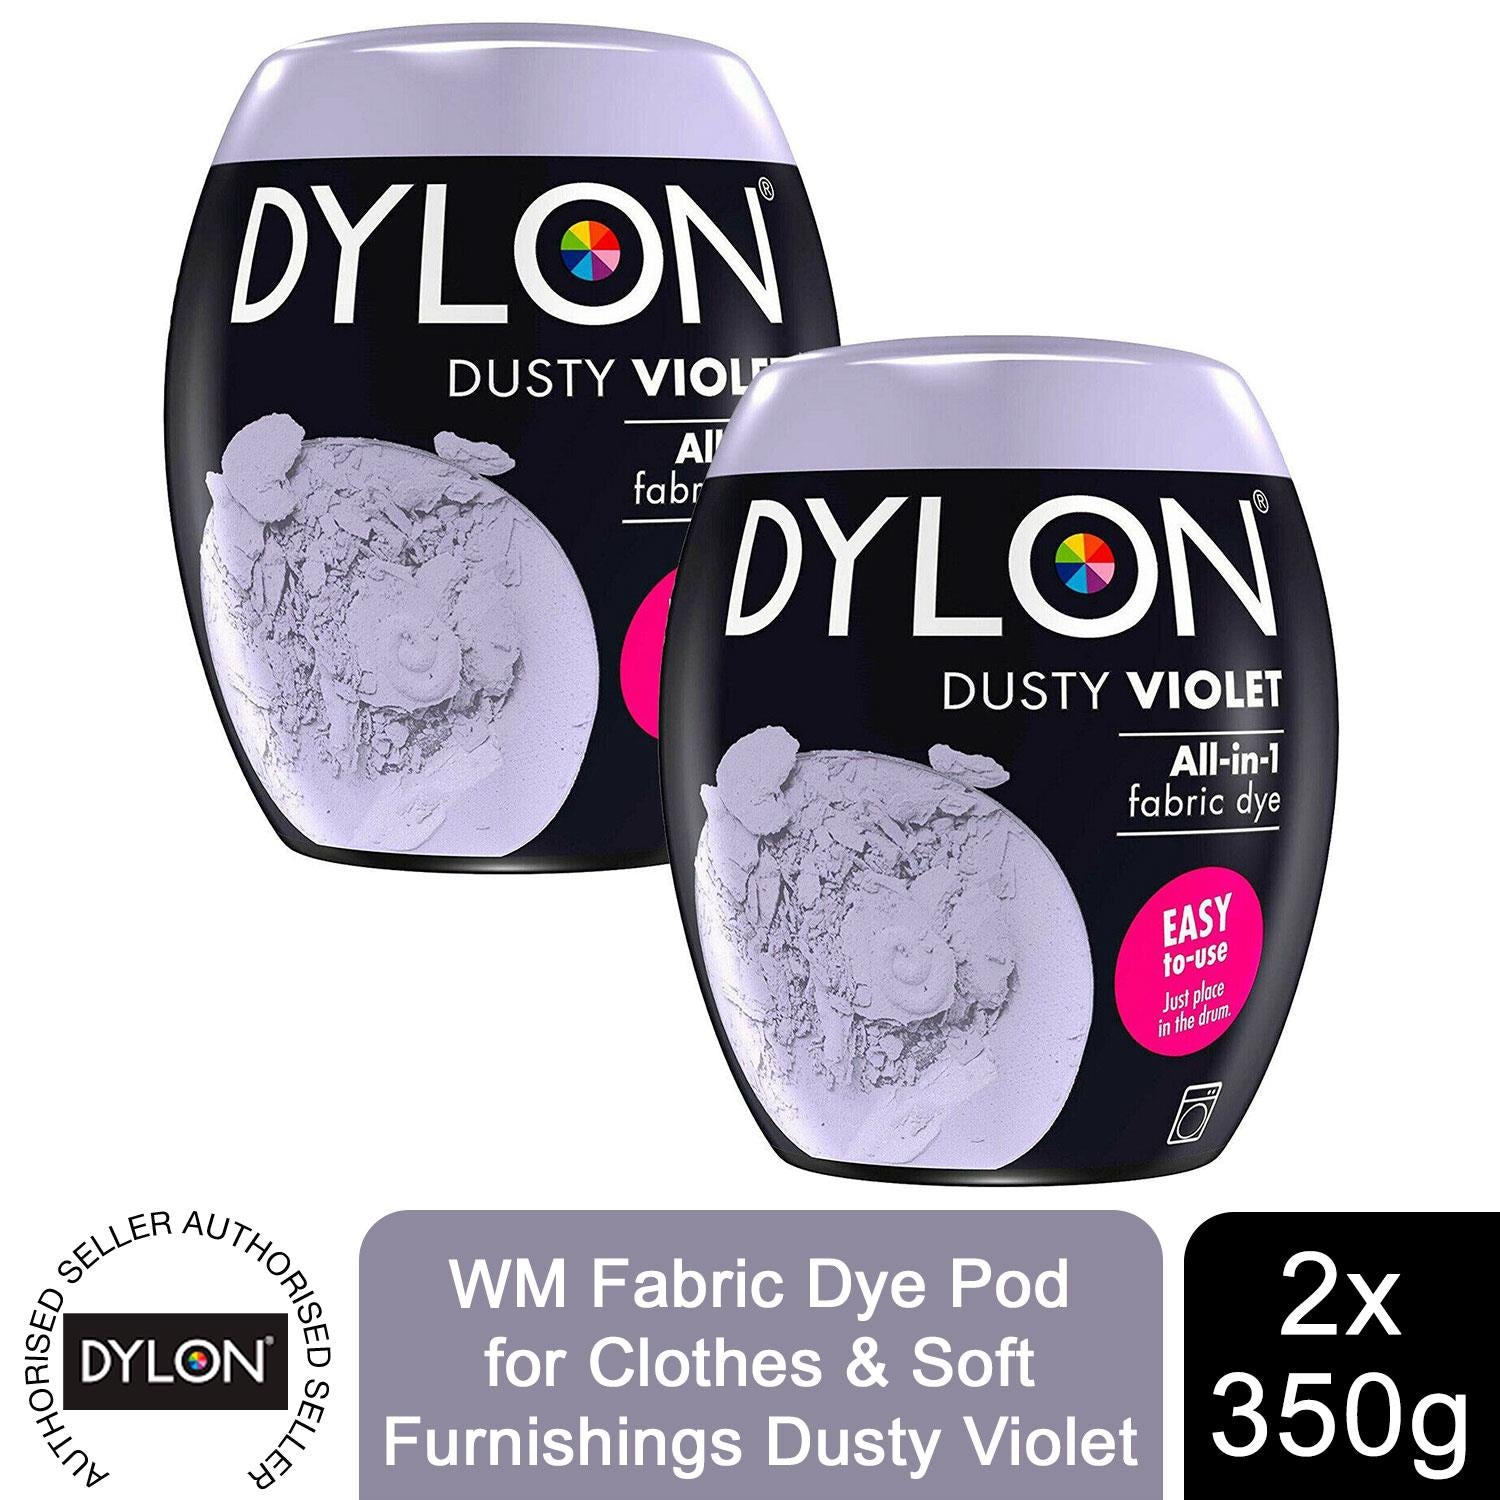 Let's stir the pot, 3 variables affecting Dylon Multi-Purpose dyes